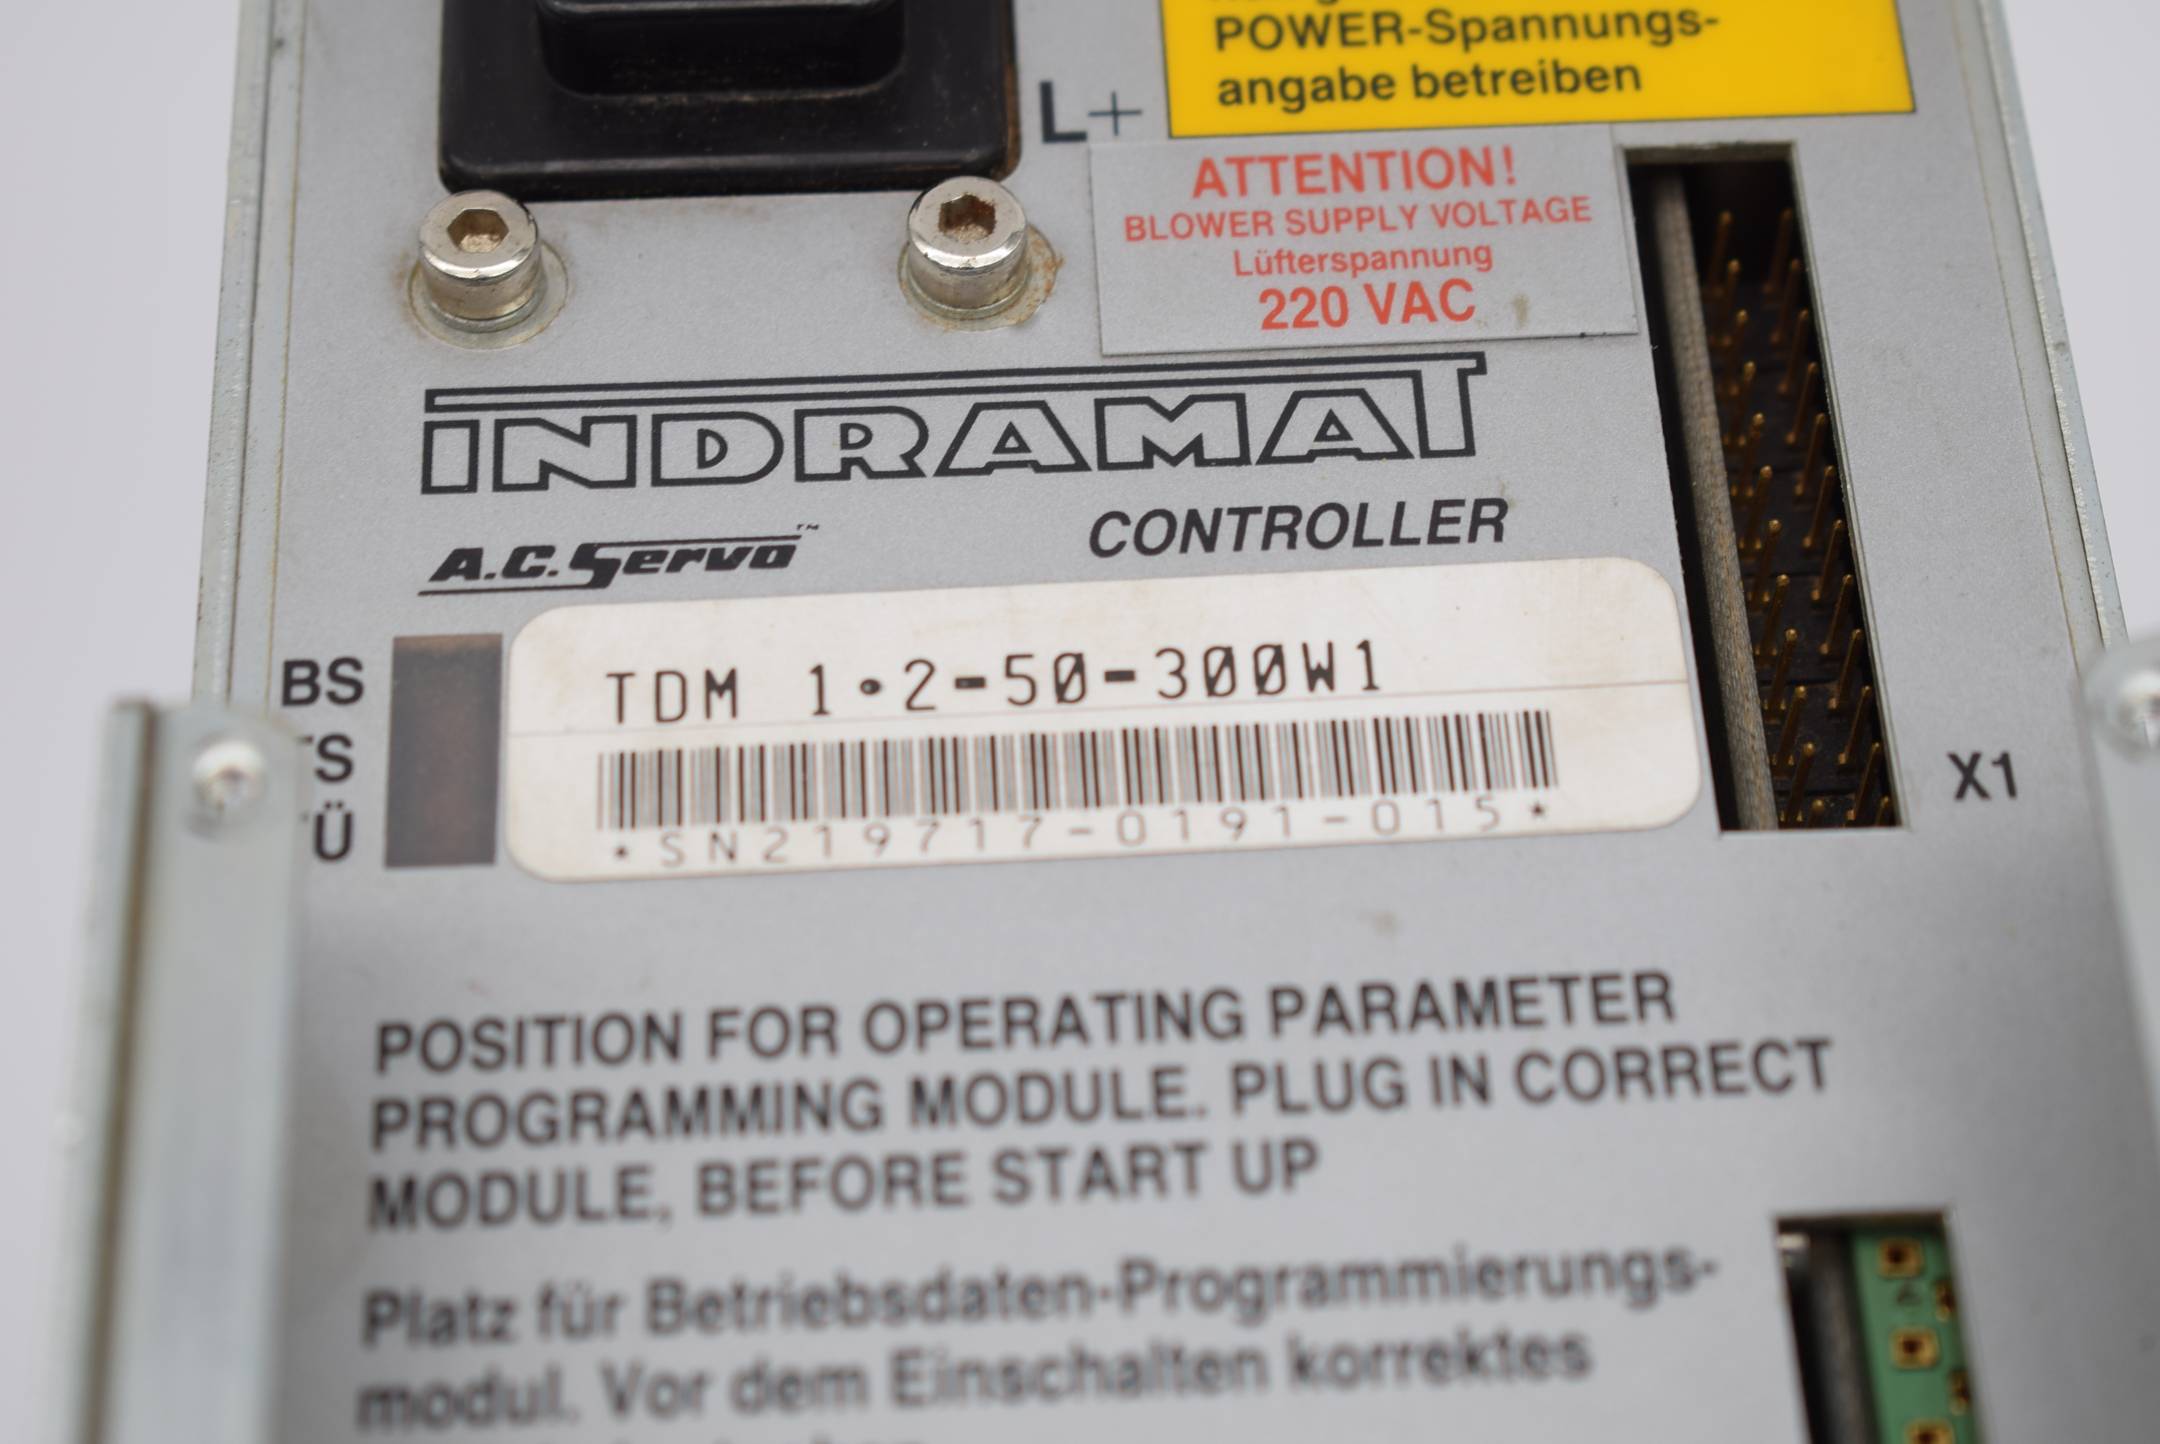 Indramat A.C. Servo Controller TDM 1.2-50-300W1